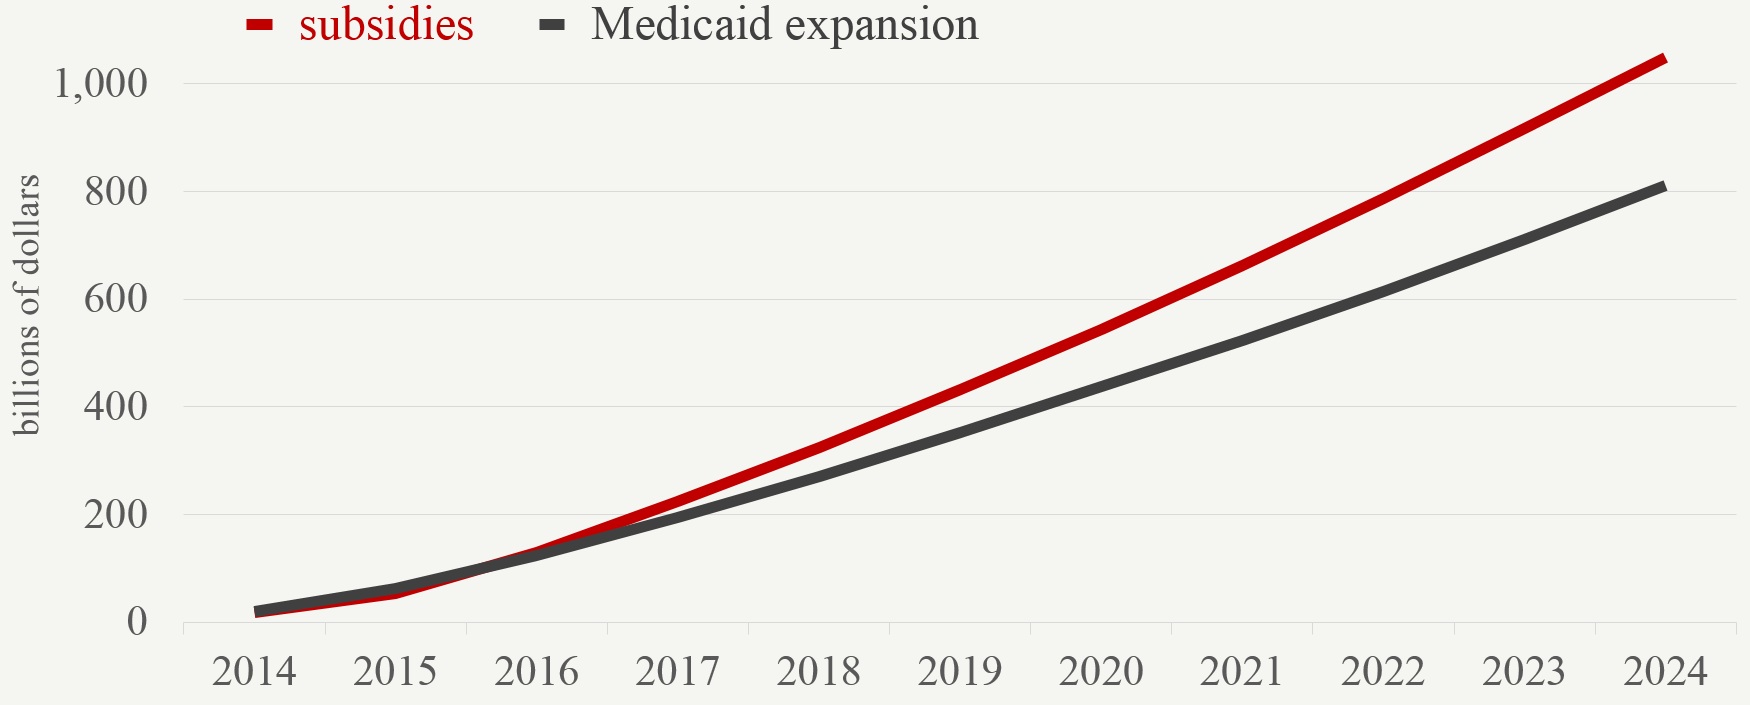 subsidies and Medicaid